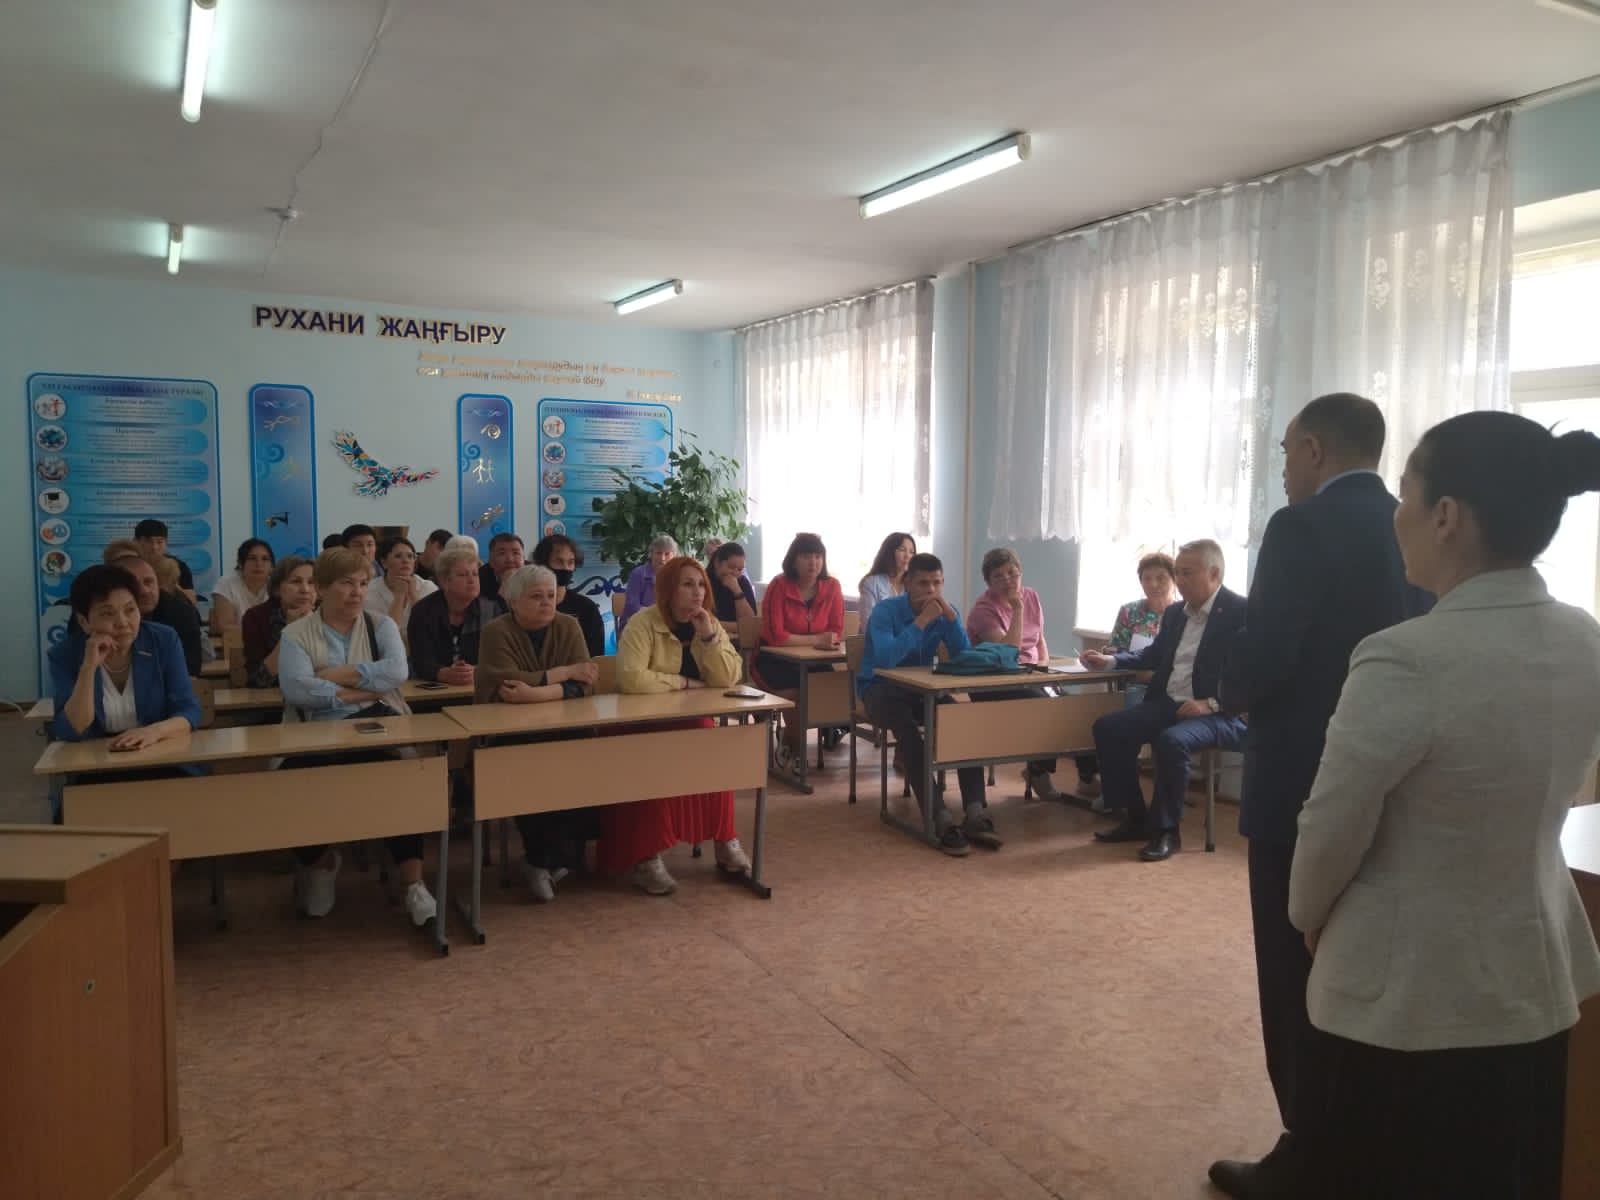 16 мая 2022 года  состоялась встреча депутата Мажилиса Парламента РК Нугмановой Г.К. с избирателями в технико-экономическом колледже г.Павлодара. 